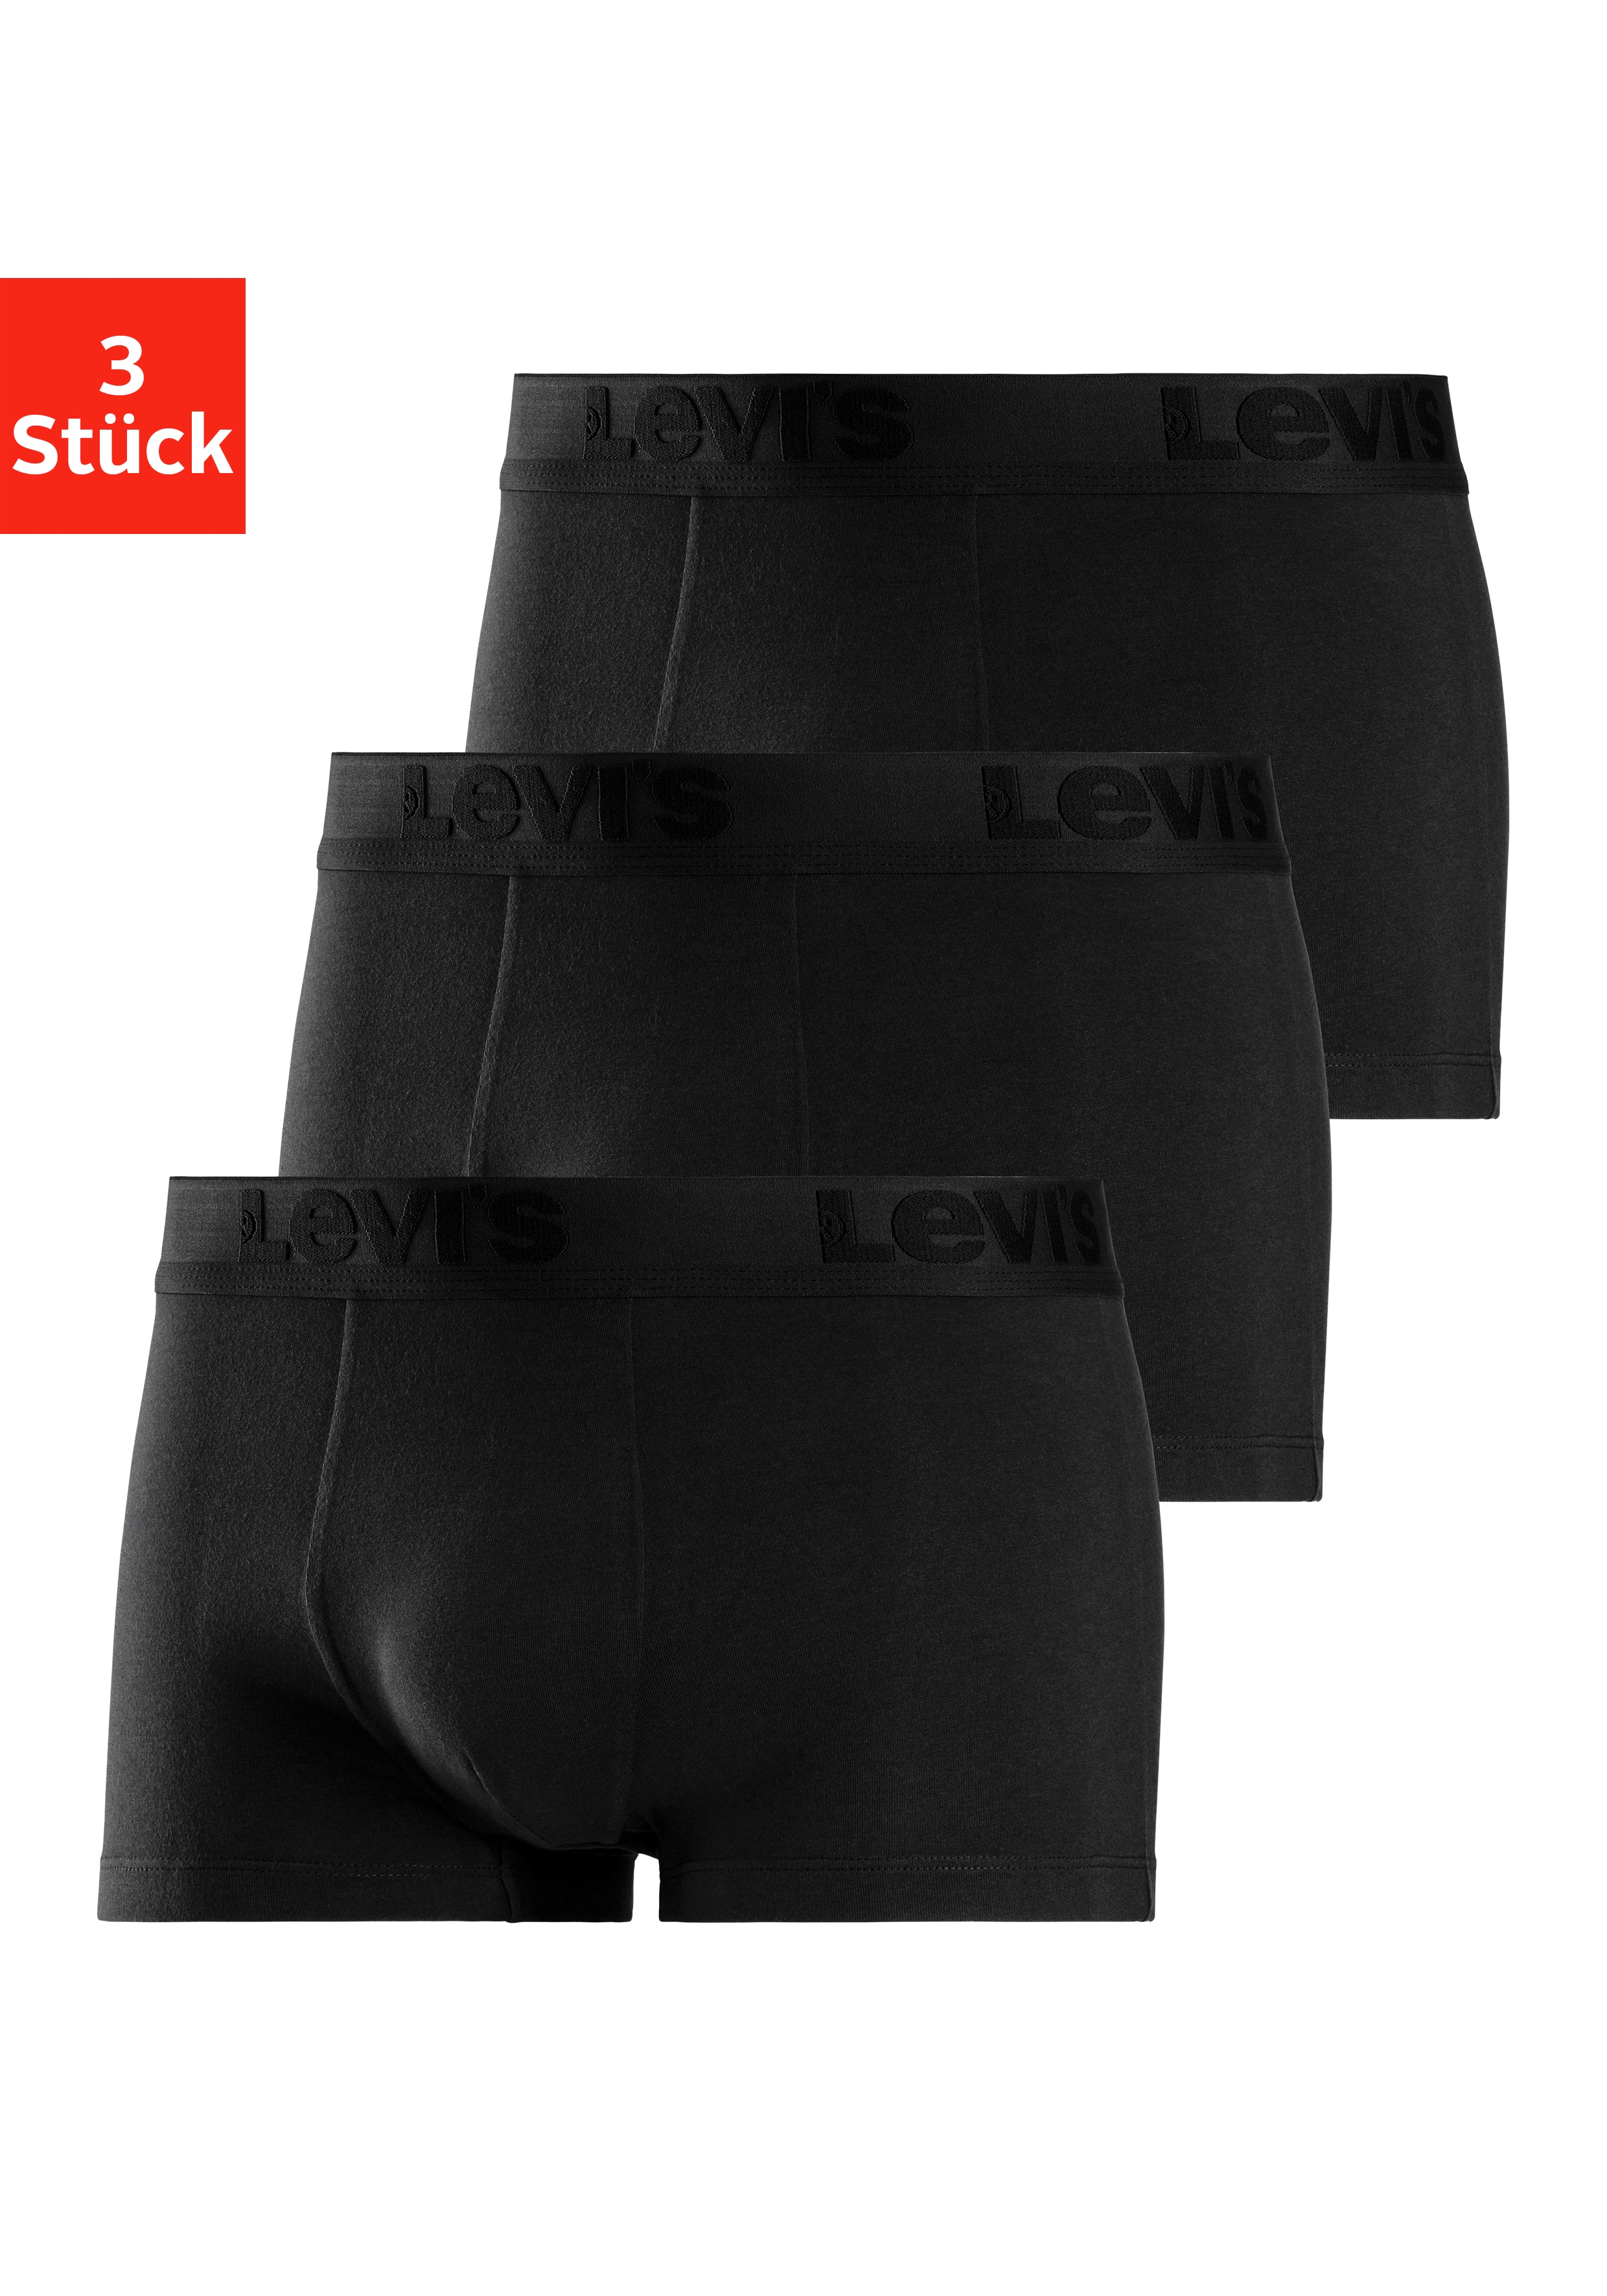 Levi's Mens Premium Men's (3 Pack) Trunks, Black, S (3er Pack)